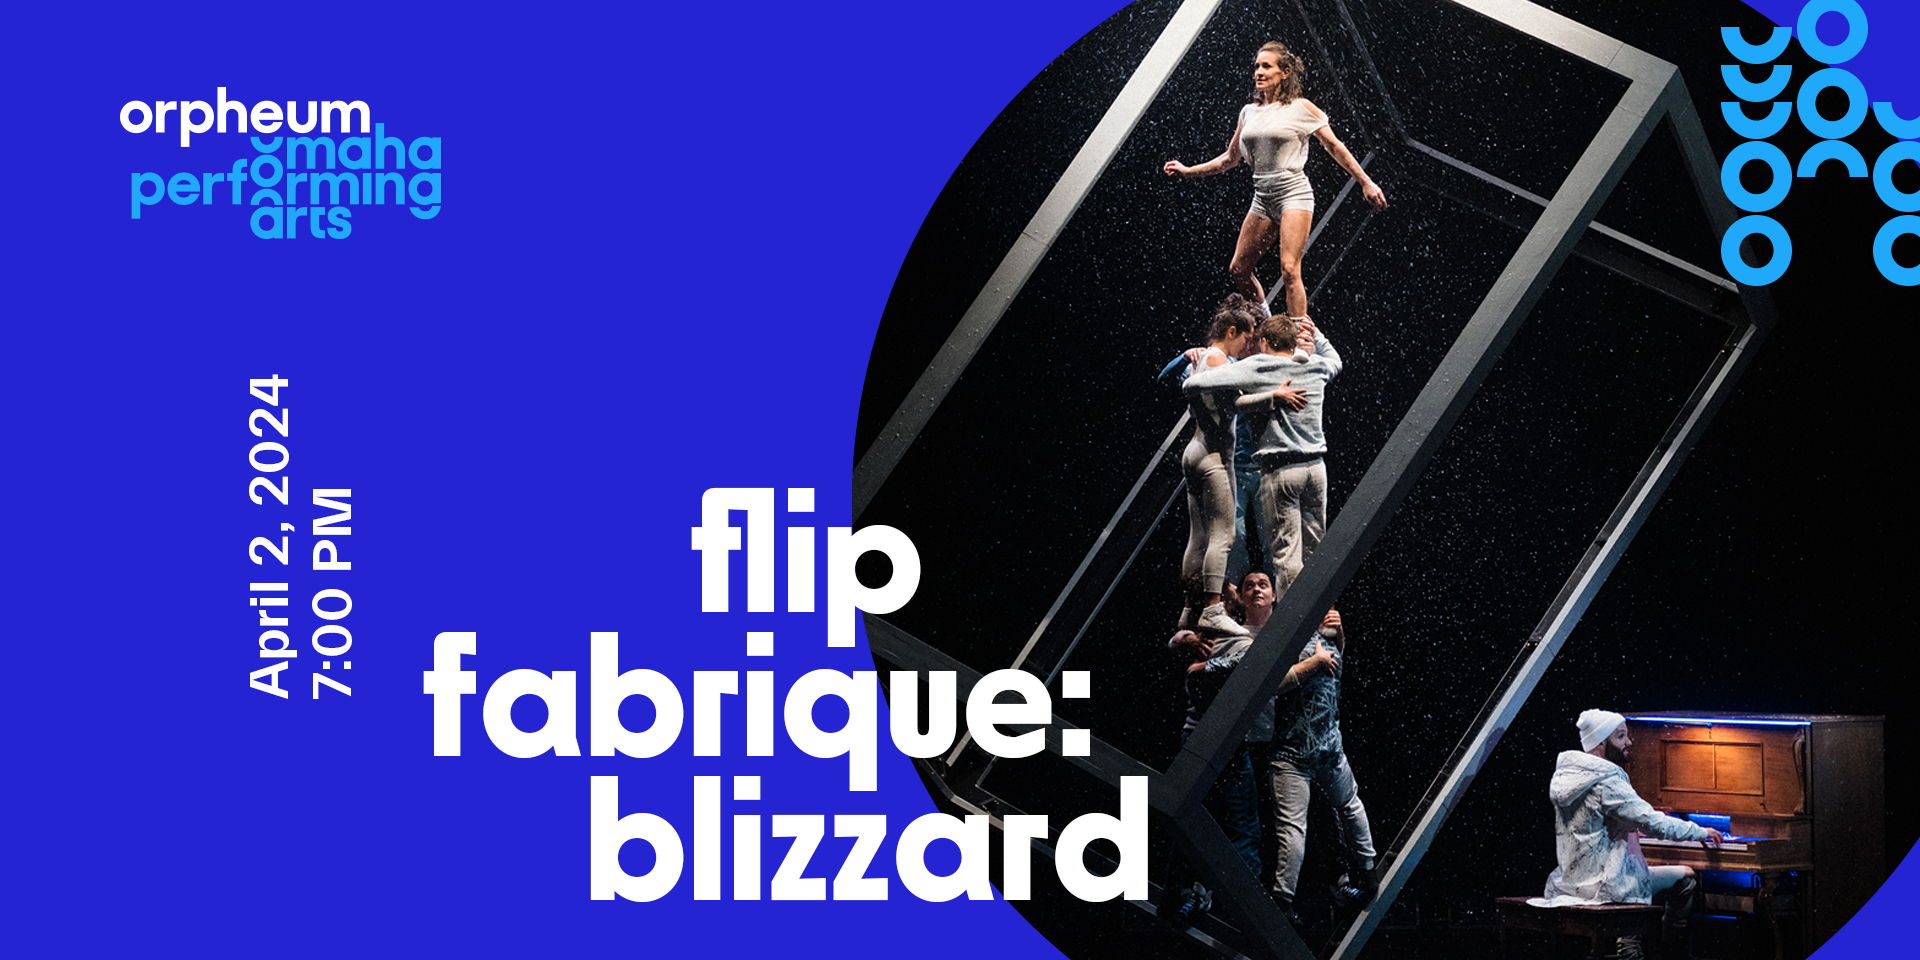 Flip Fabrique: Blizzard promotional image